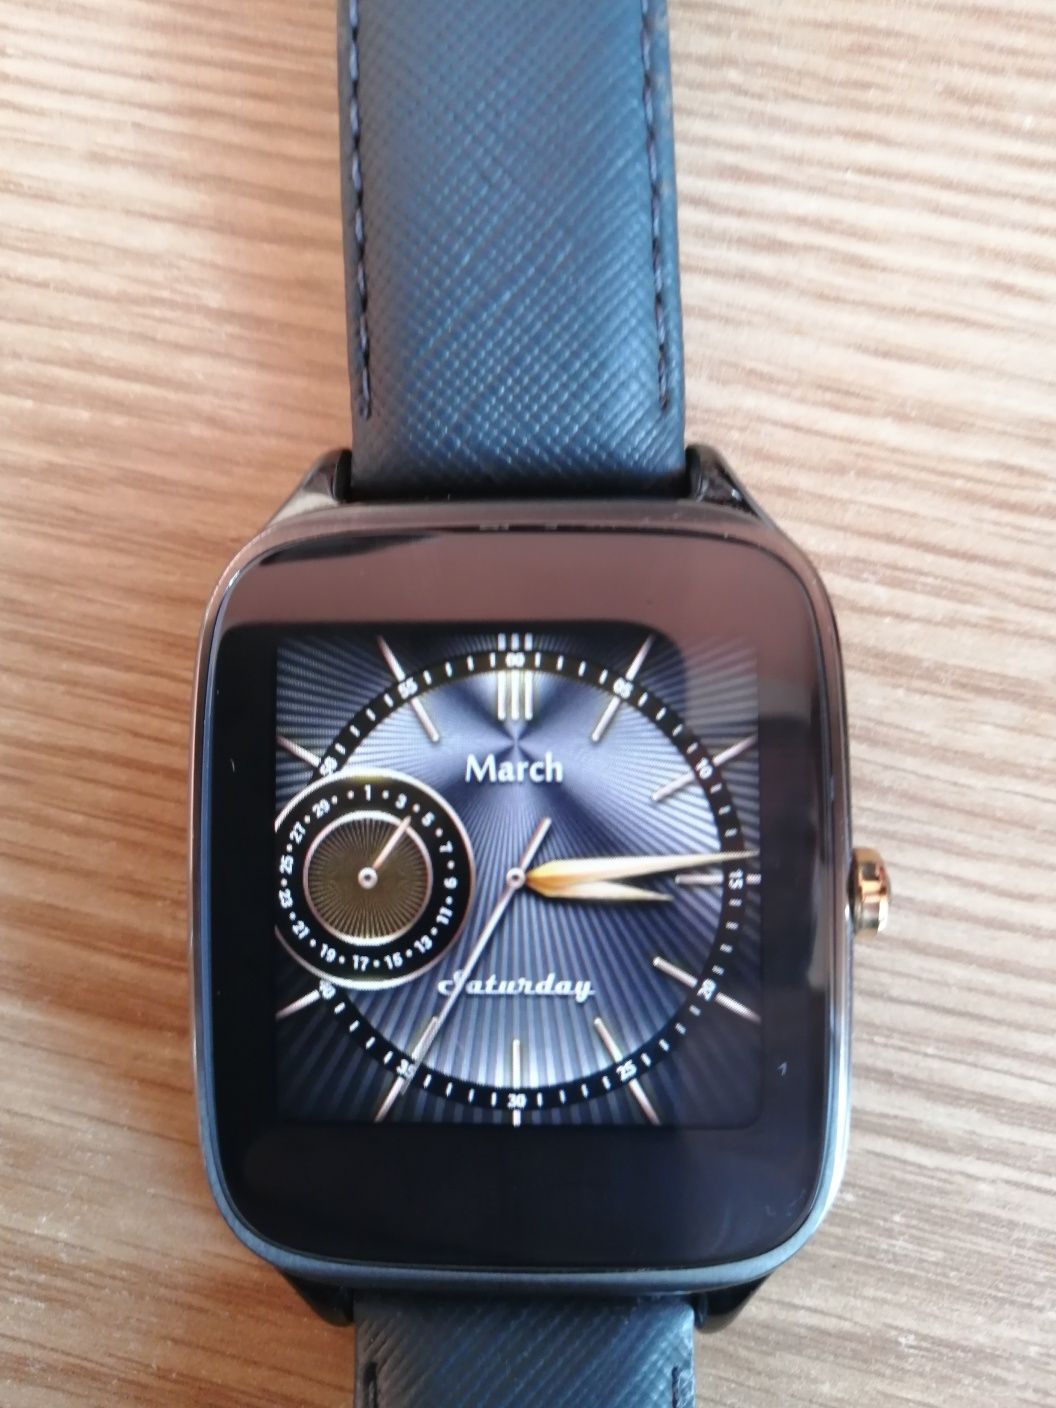 Smart watch Asus Zenwatch 2